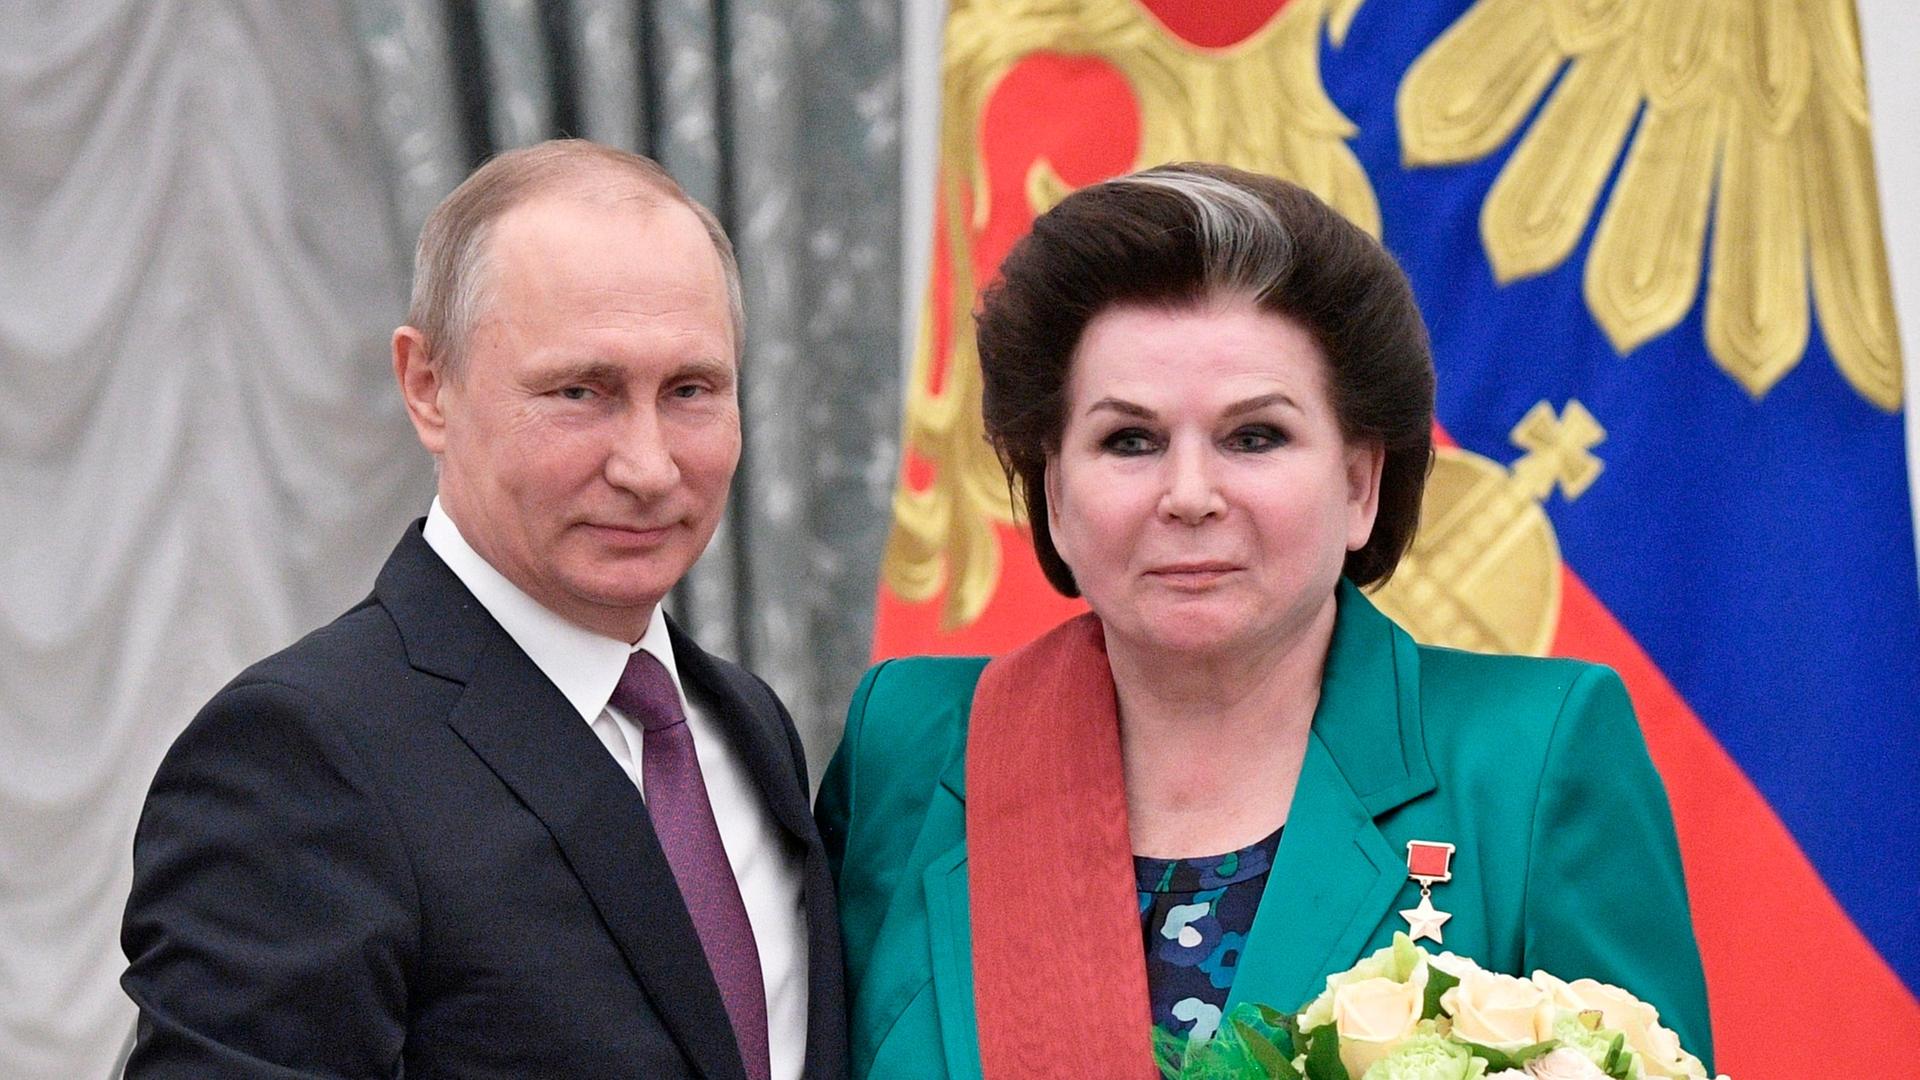 Der russische Präsident Wladimir Putin überreicht im Kreml im Rahmen einer staatlichen Preisverleihung eine Medaille an die erste Frau im Weltraum, die Kosmonautin Walentina Tereschkowa. 